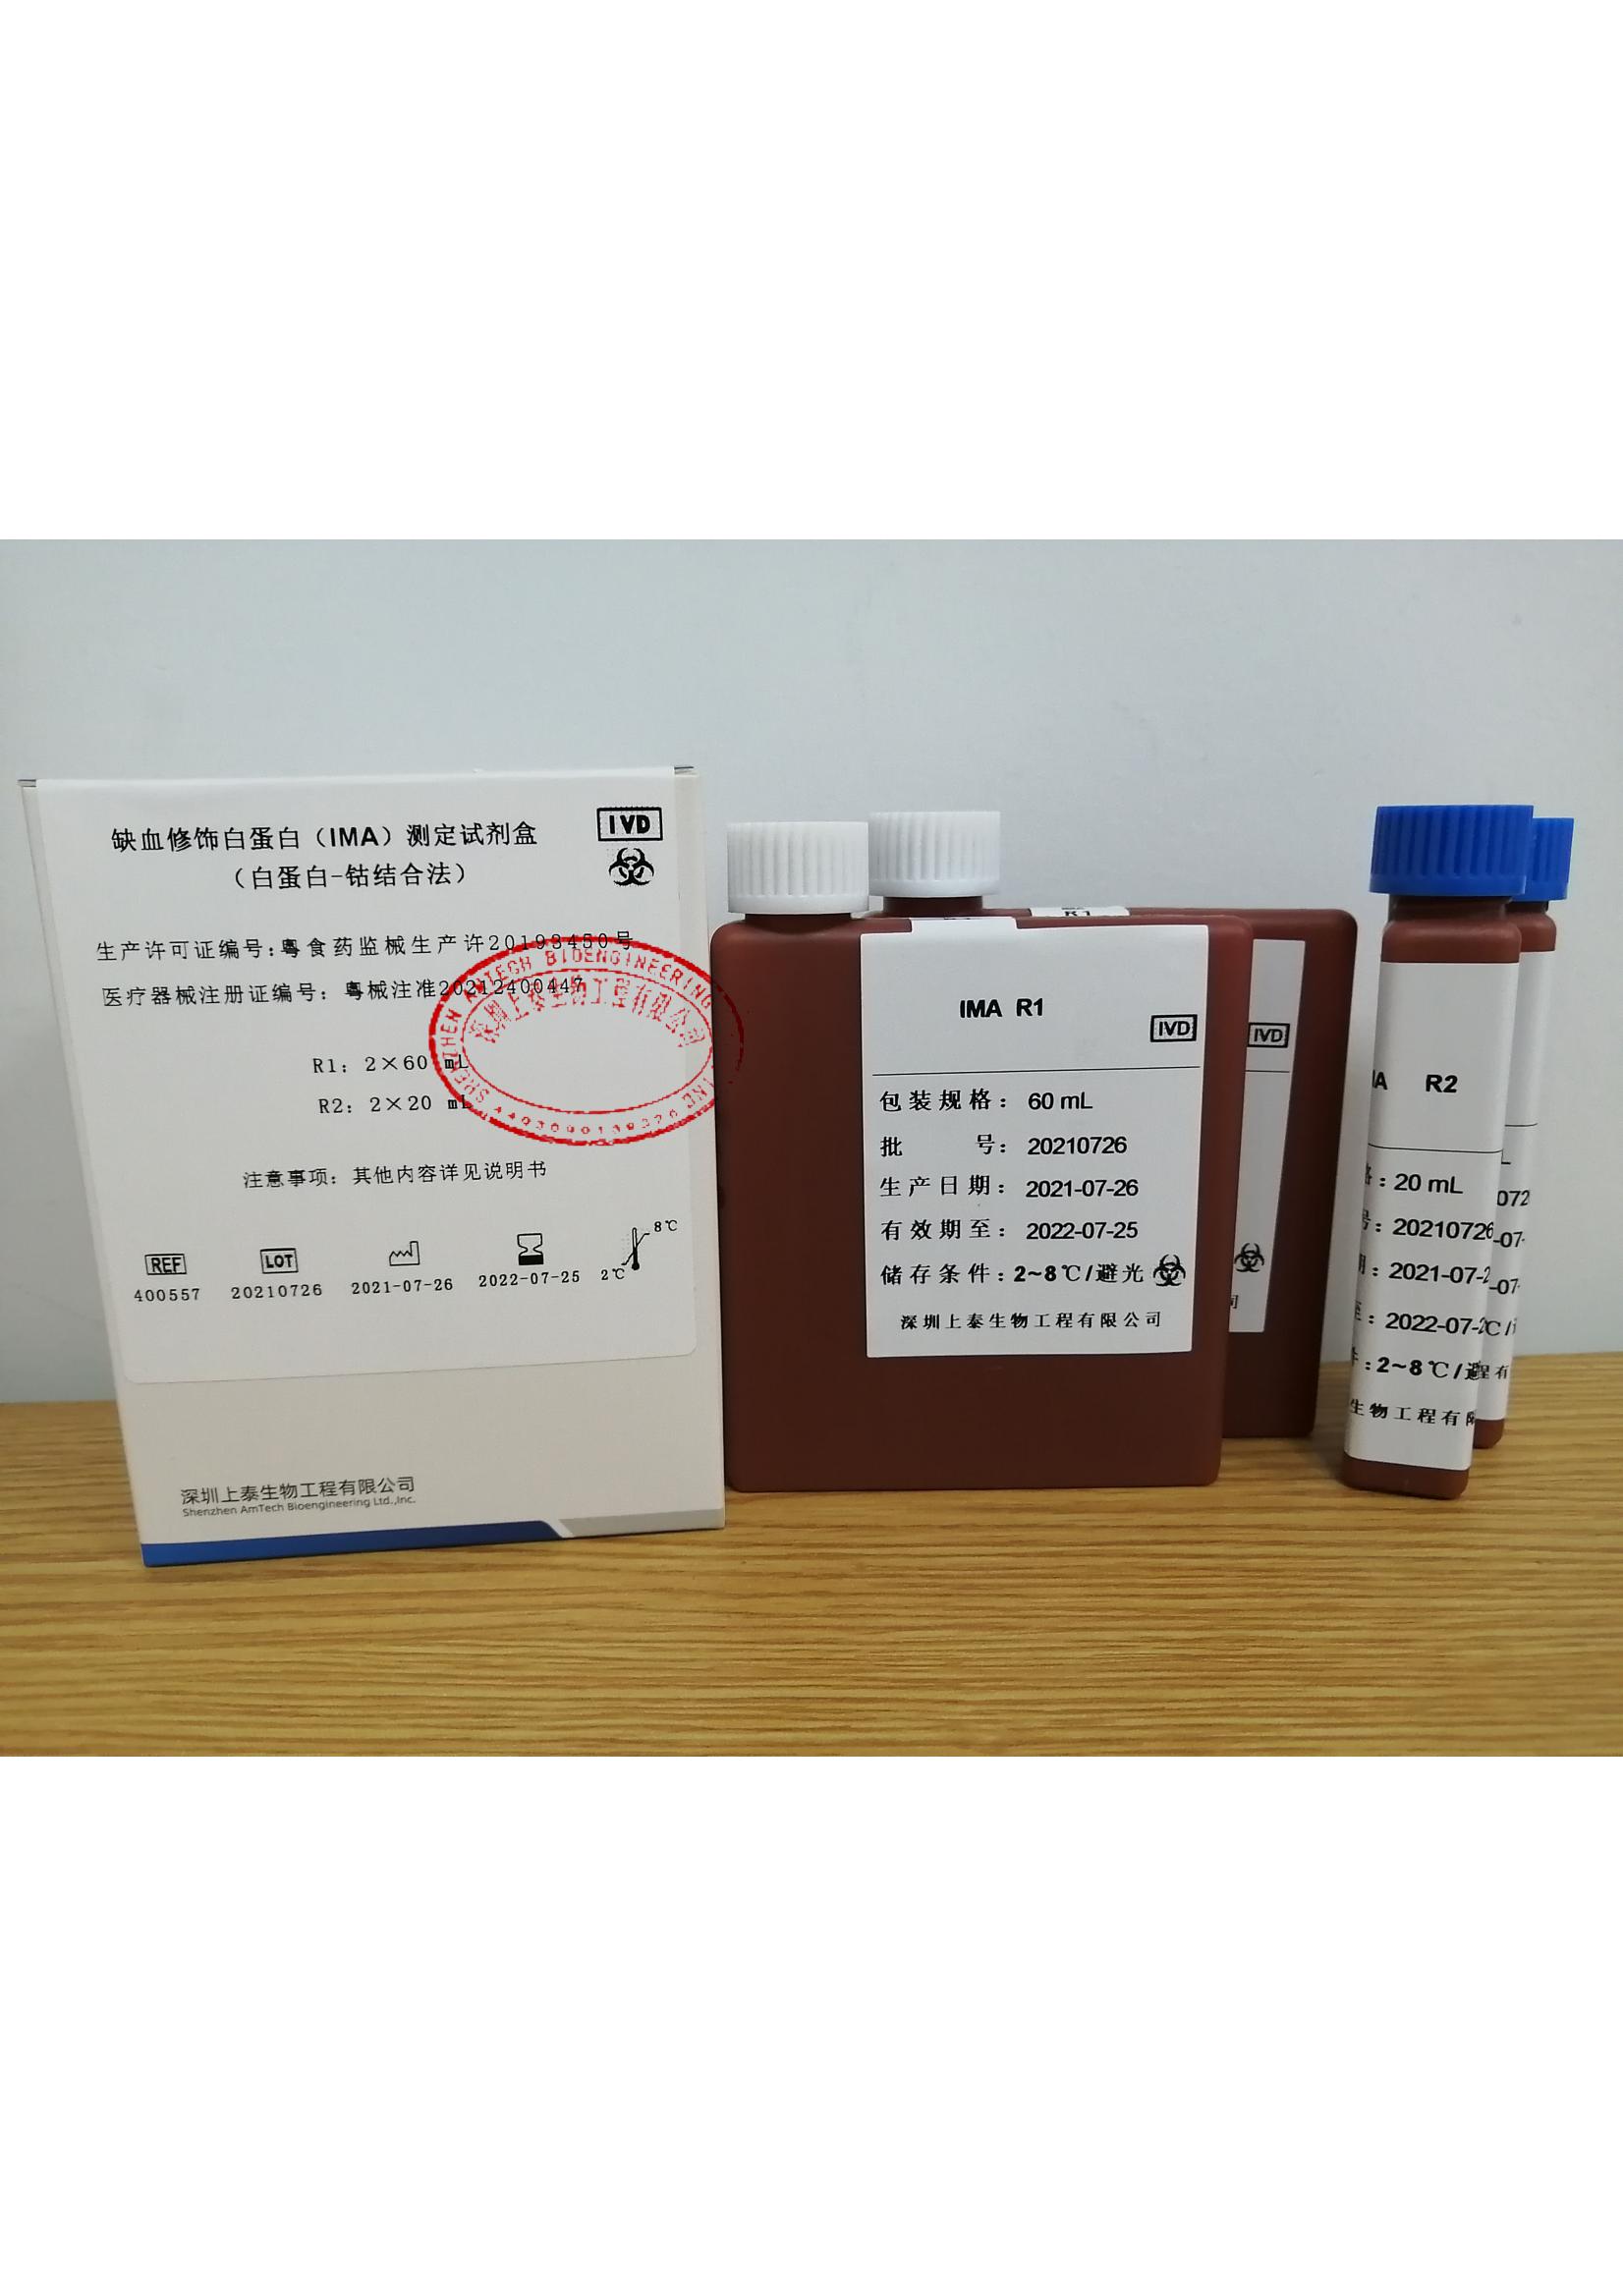 【深圳上泰】缺血修饰白蛋白(IMA)测定试剂盒(白蛋白-钴结合法)